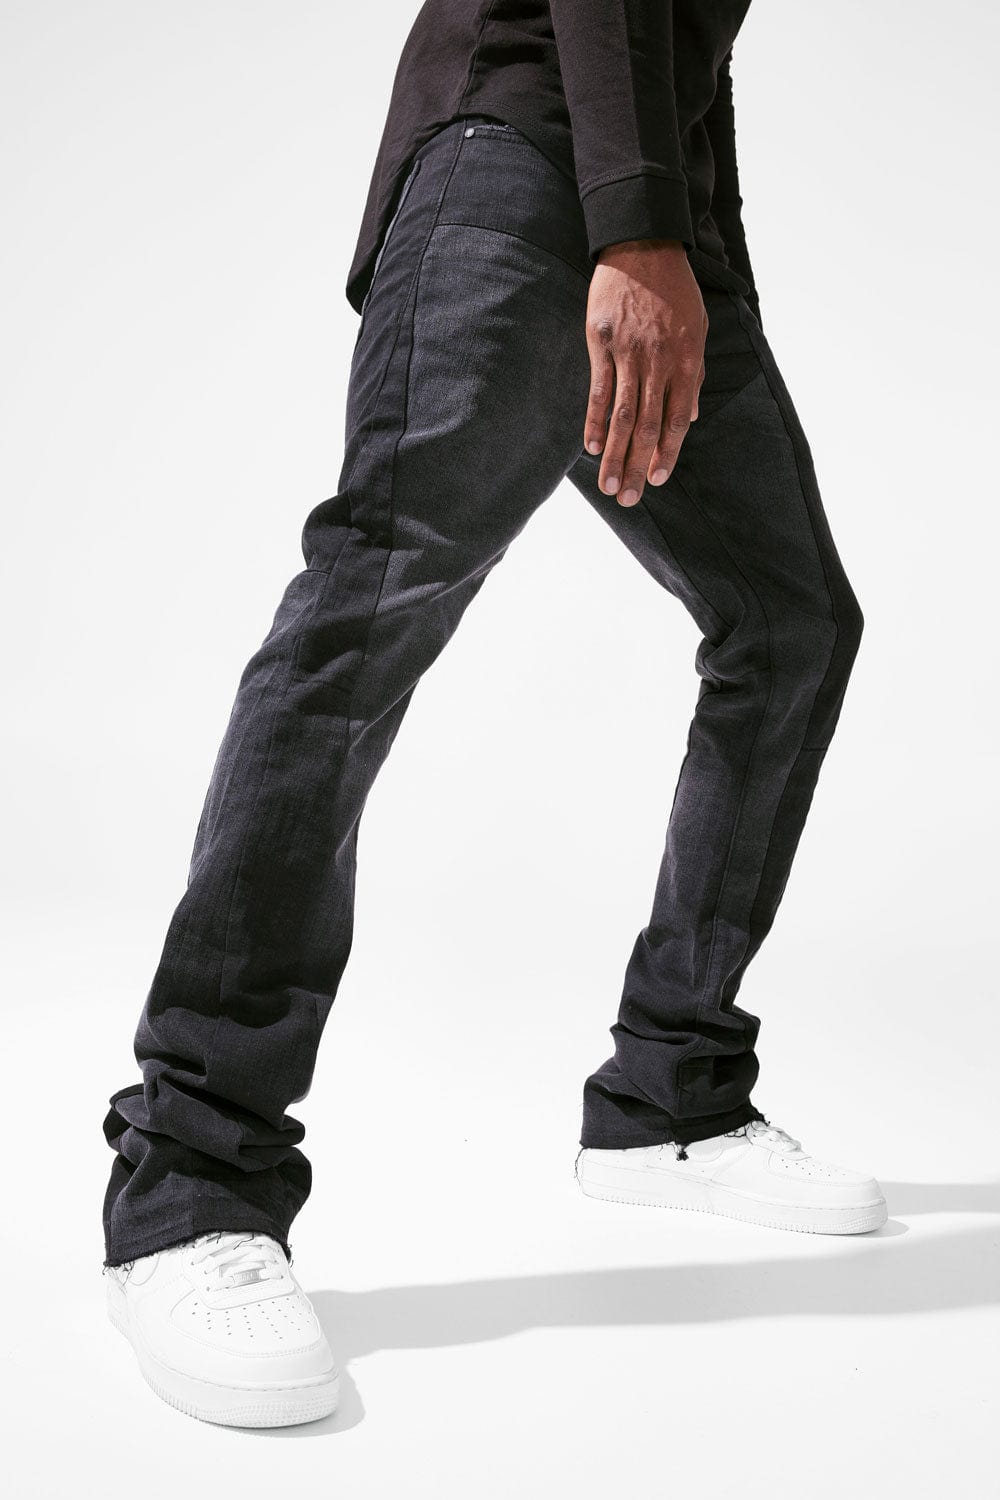 Jordan Craig Blow Out Relax Fit Men's Denim Jean Pants Black jc3478-bs  (Size 34/34) 